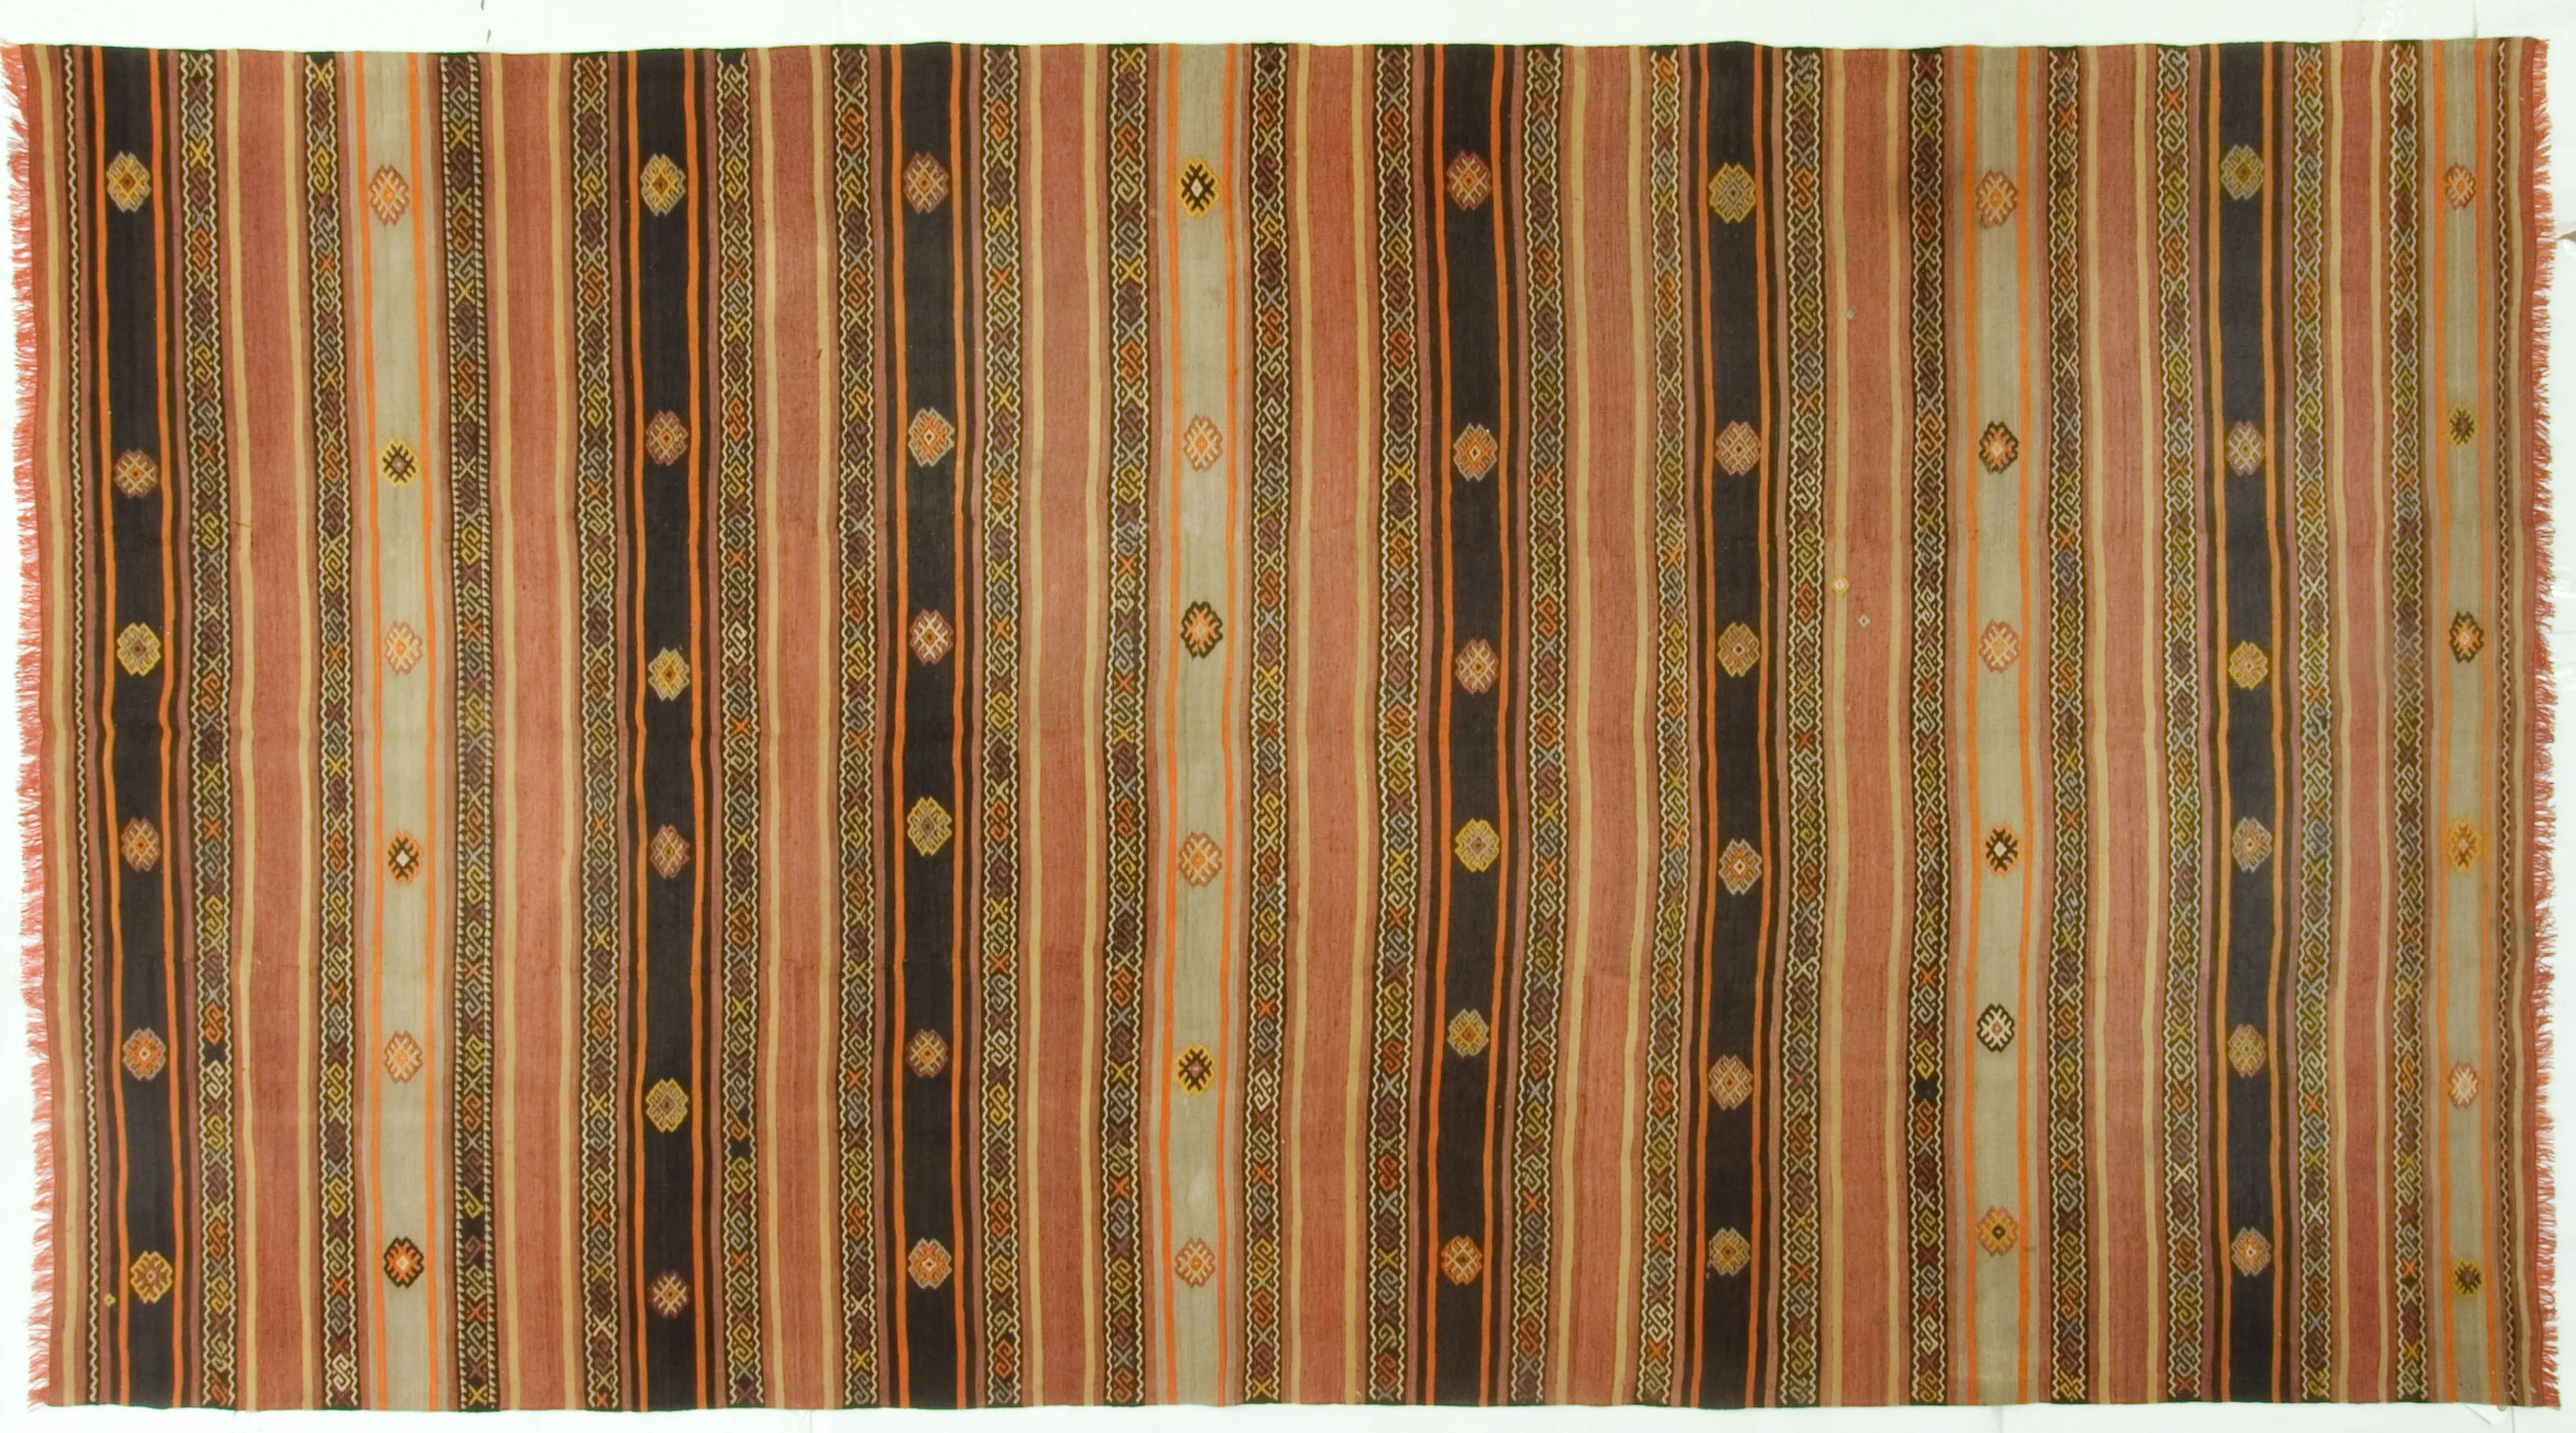 Turkish Hand Woven Kilim Rug 6'3"x11'10" - Brown - Brown